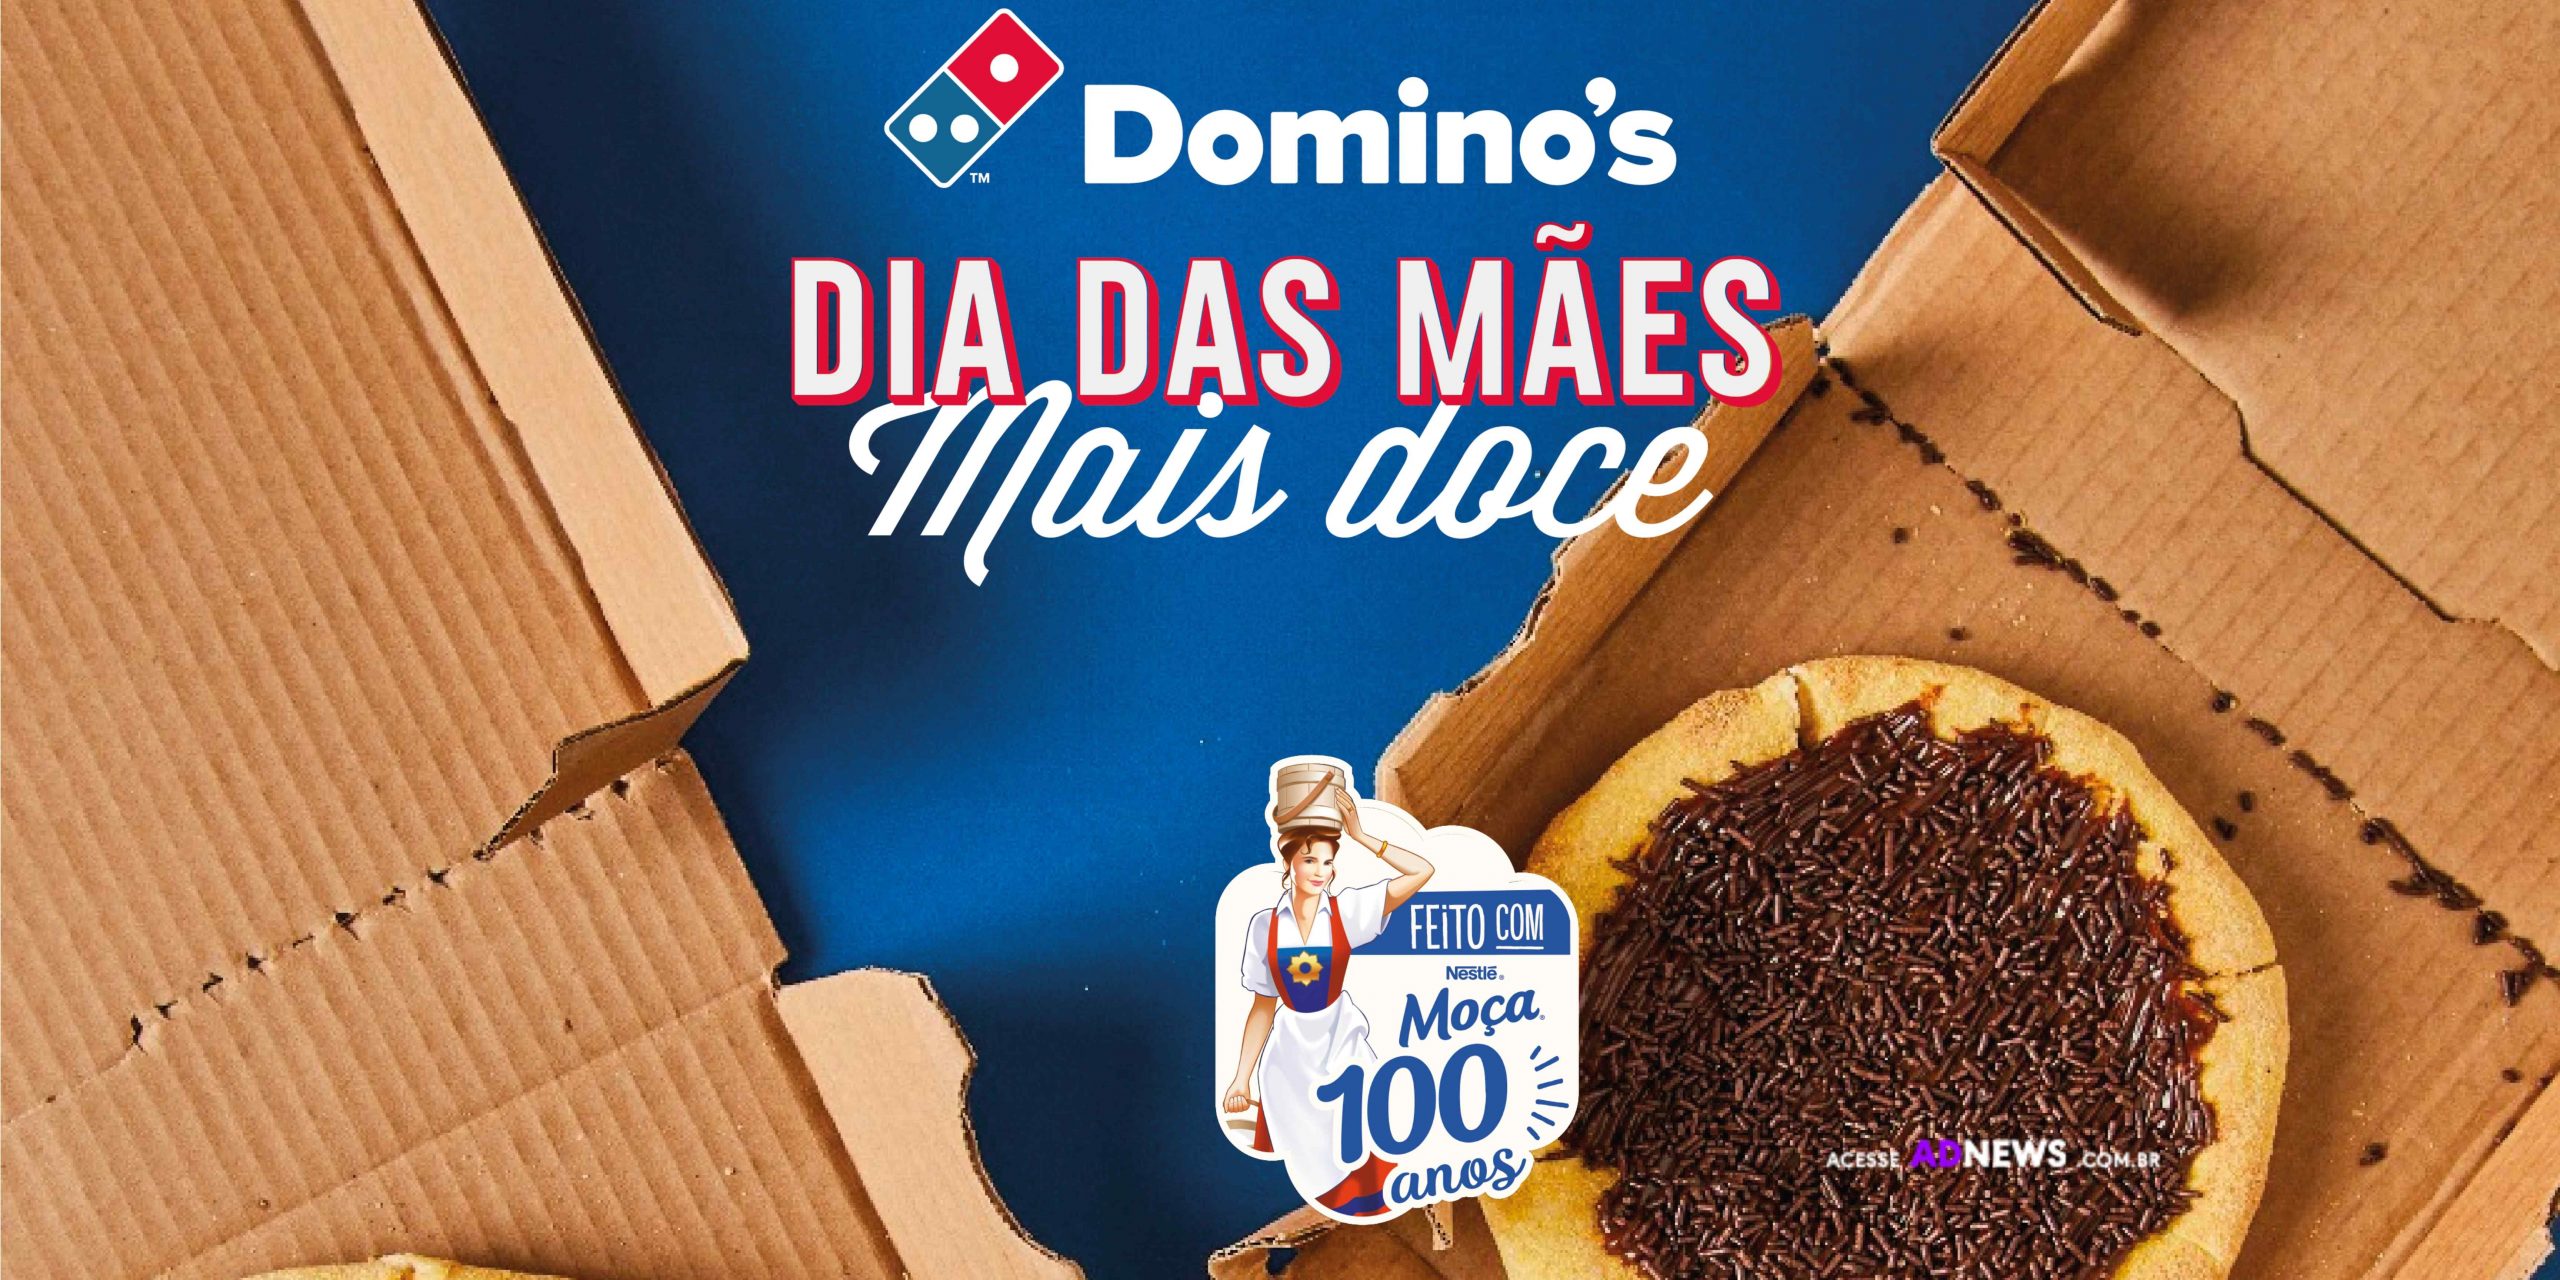 Nestlé e Pizza apresentam promoção especial de Dia das Mães